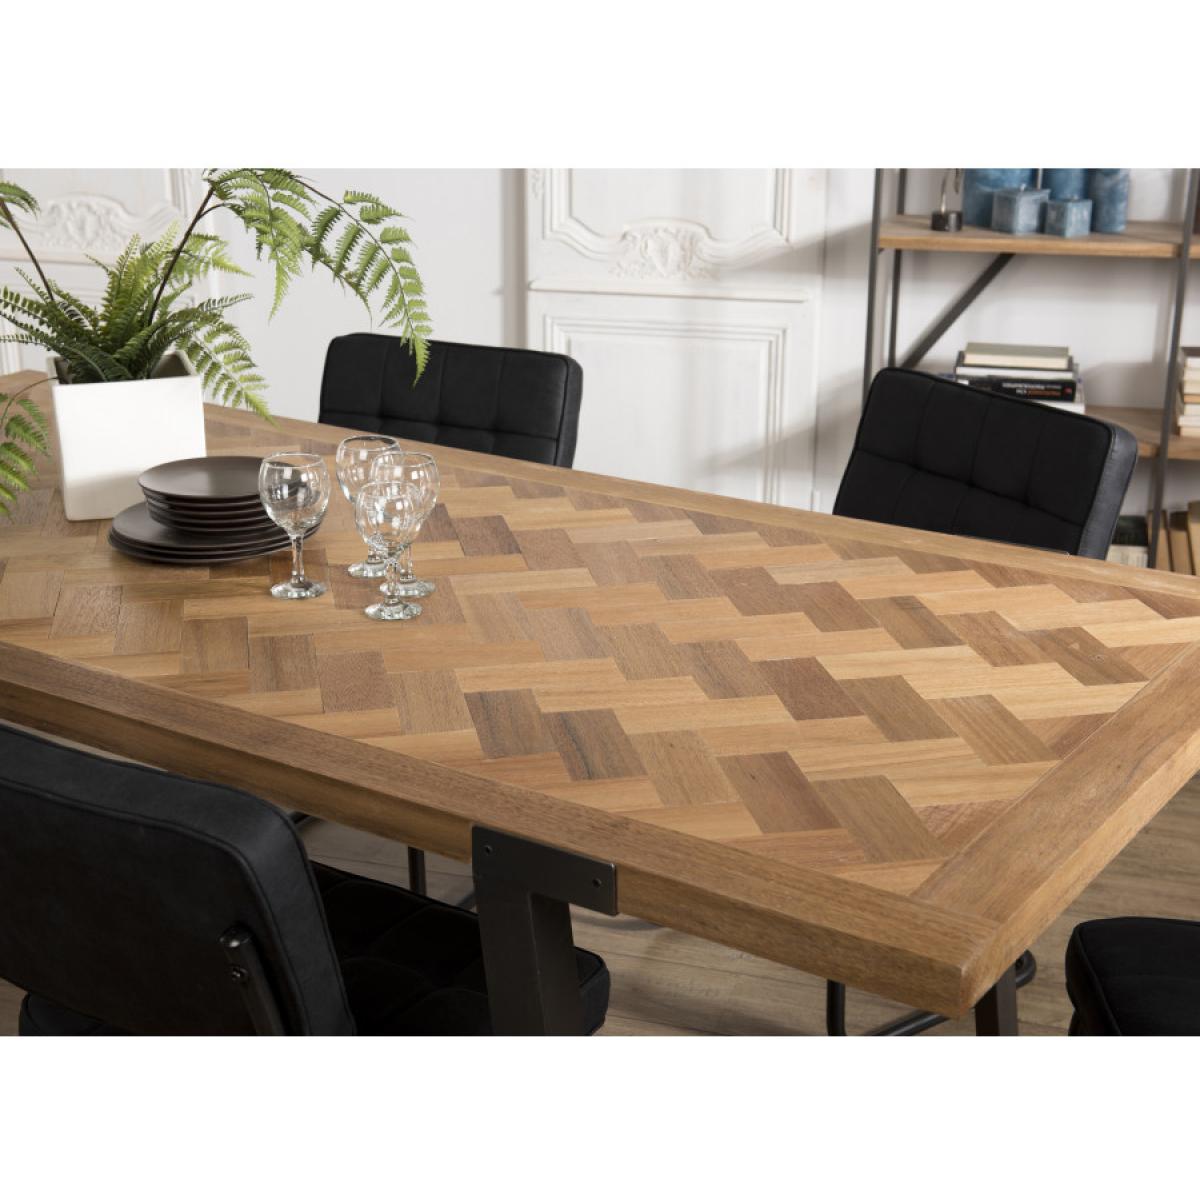 CLEMENCE - Table à manger 220x100cm bois et métal